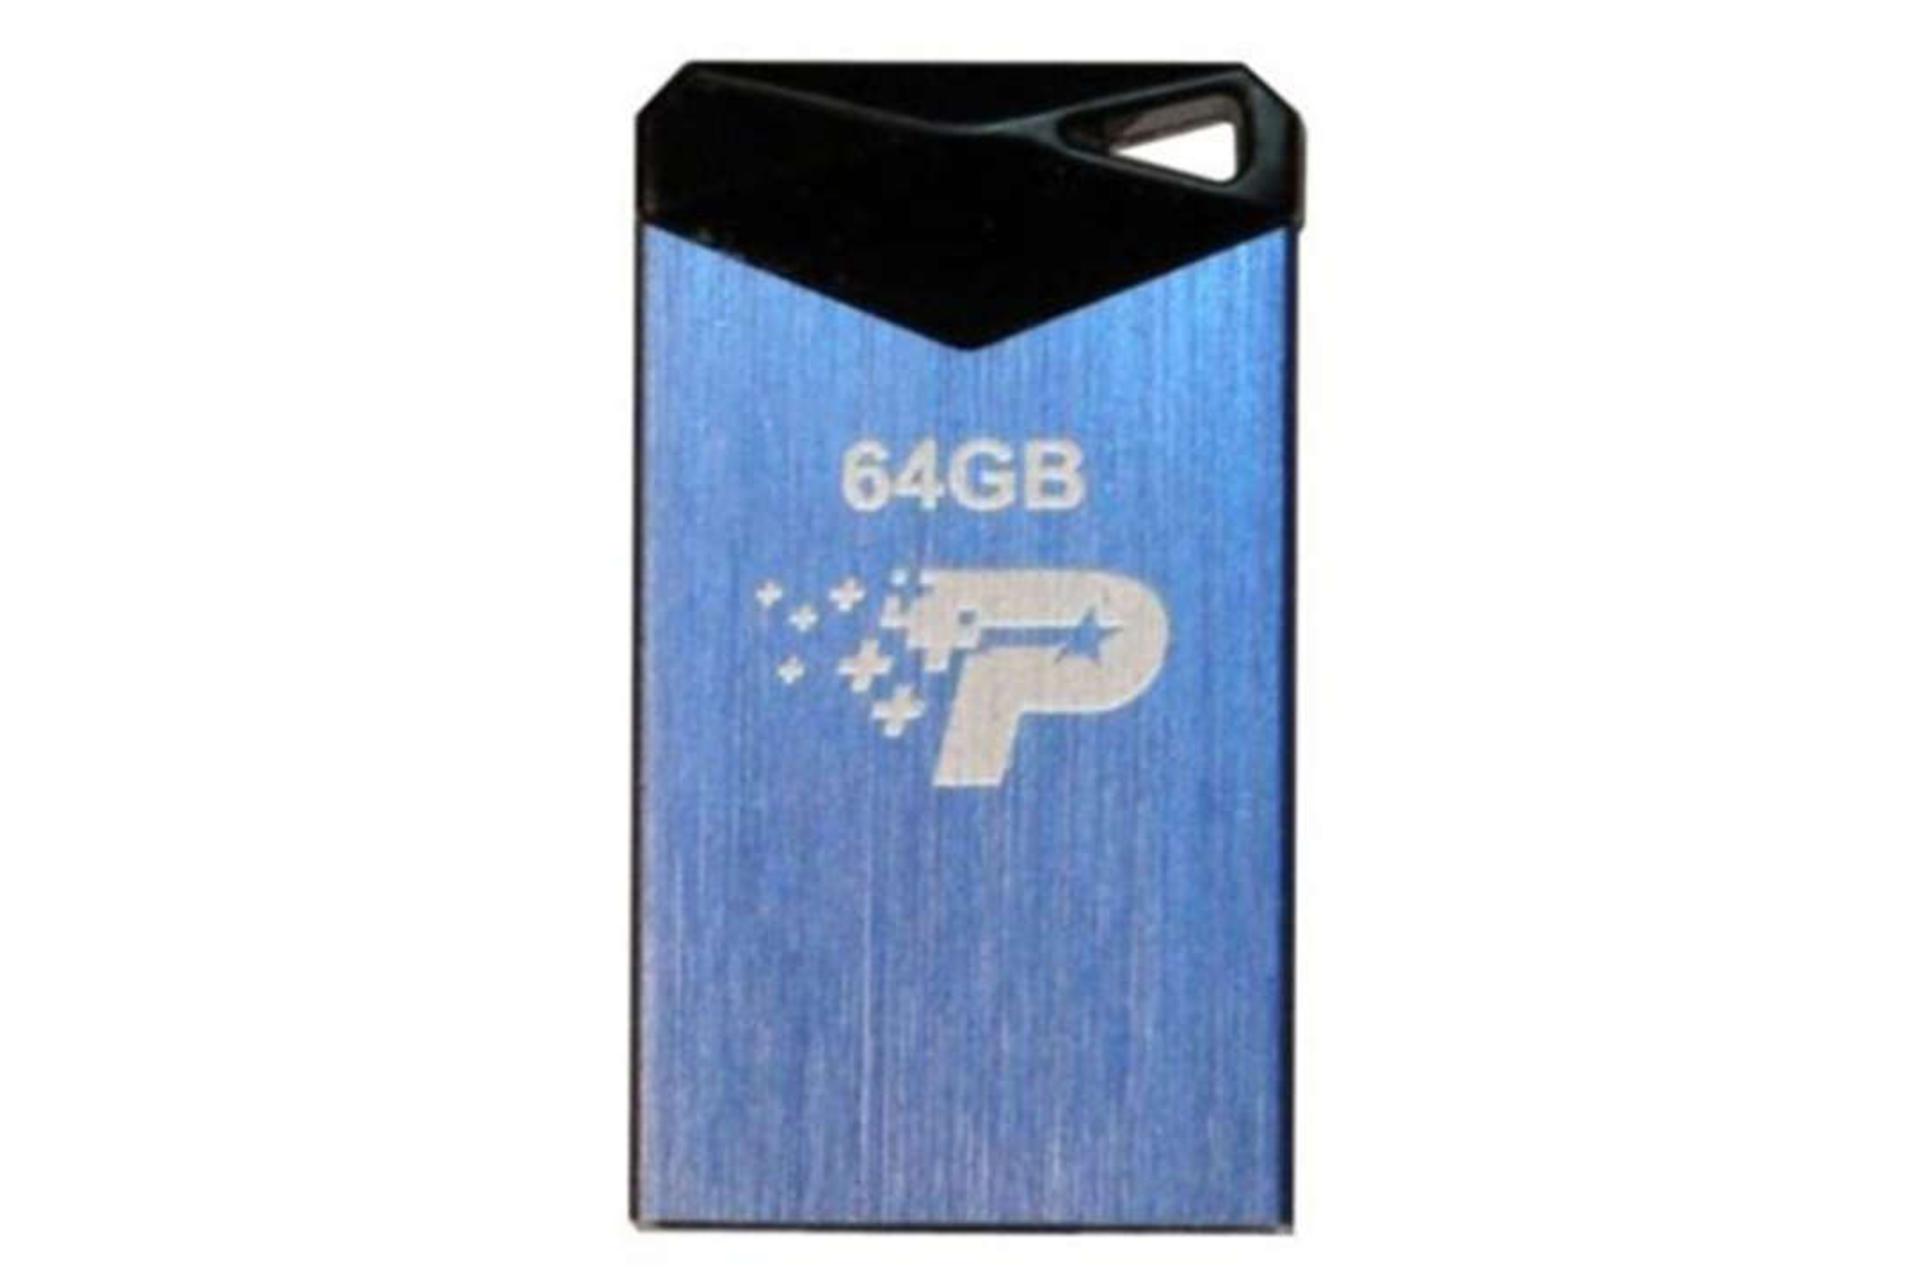 مرجع متخصصين ايران Patriot Vex USB 3.1 64GB